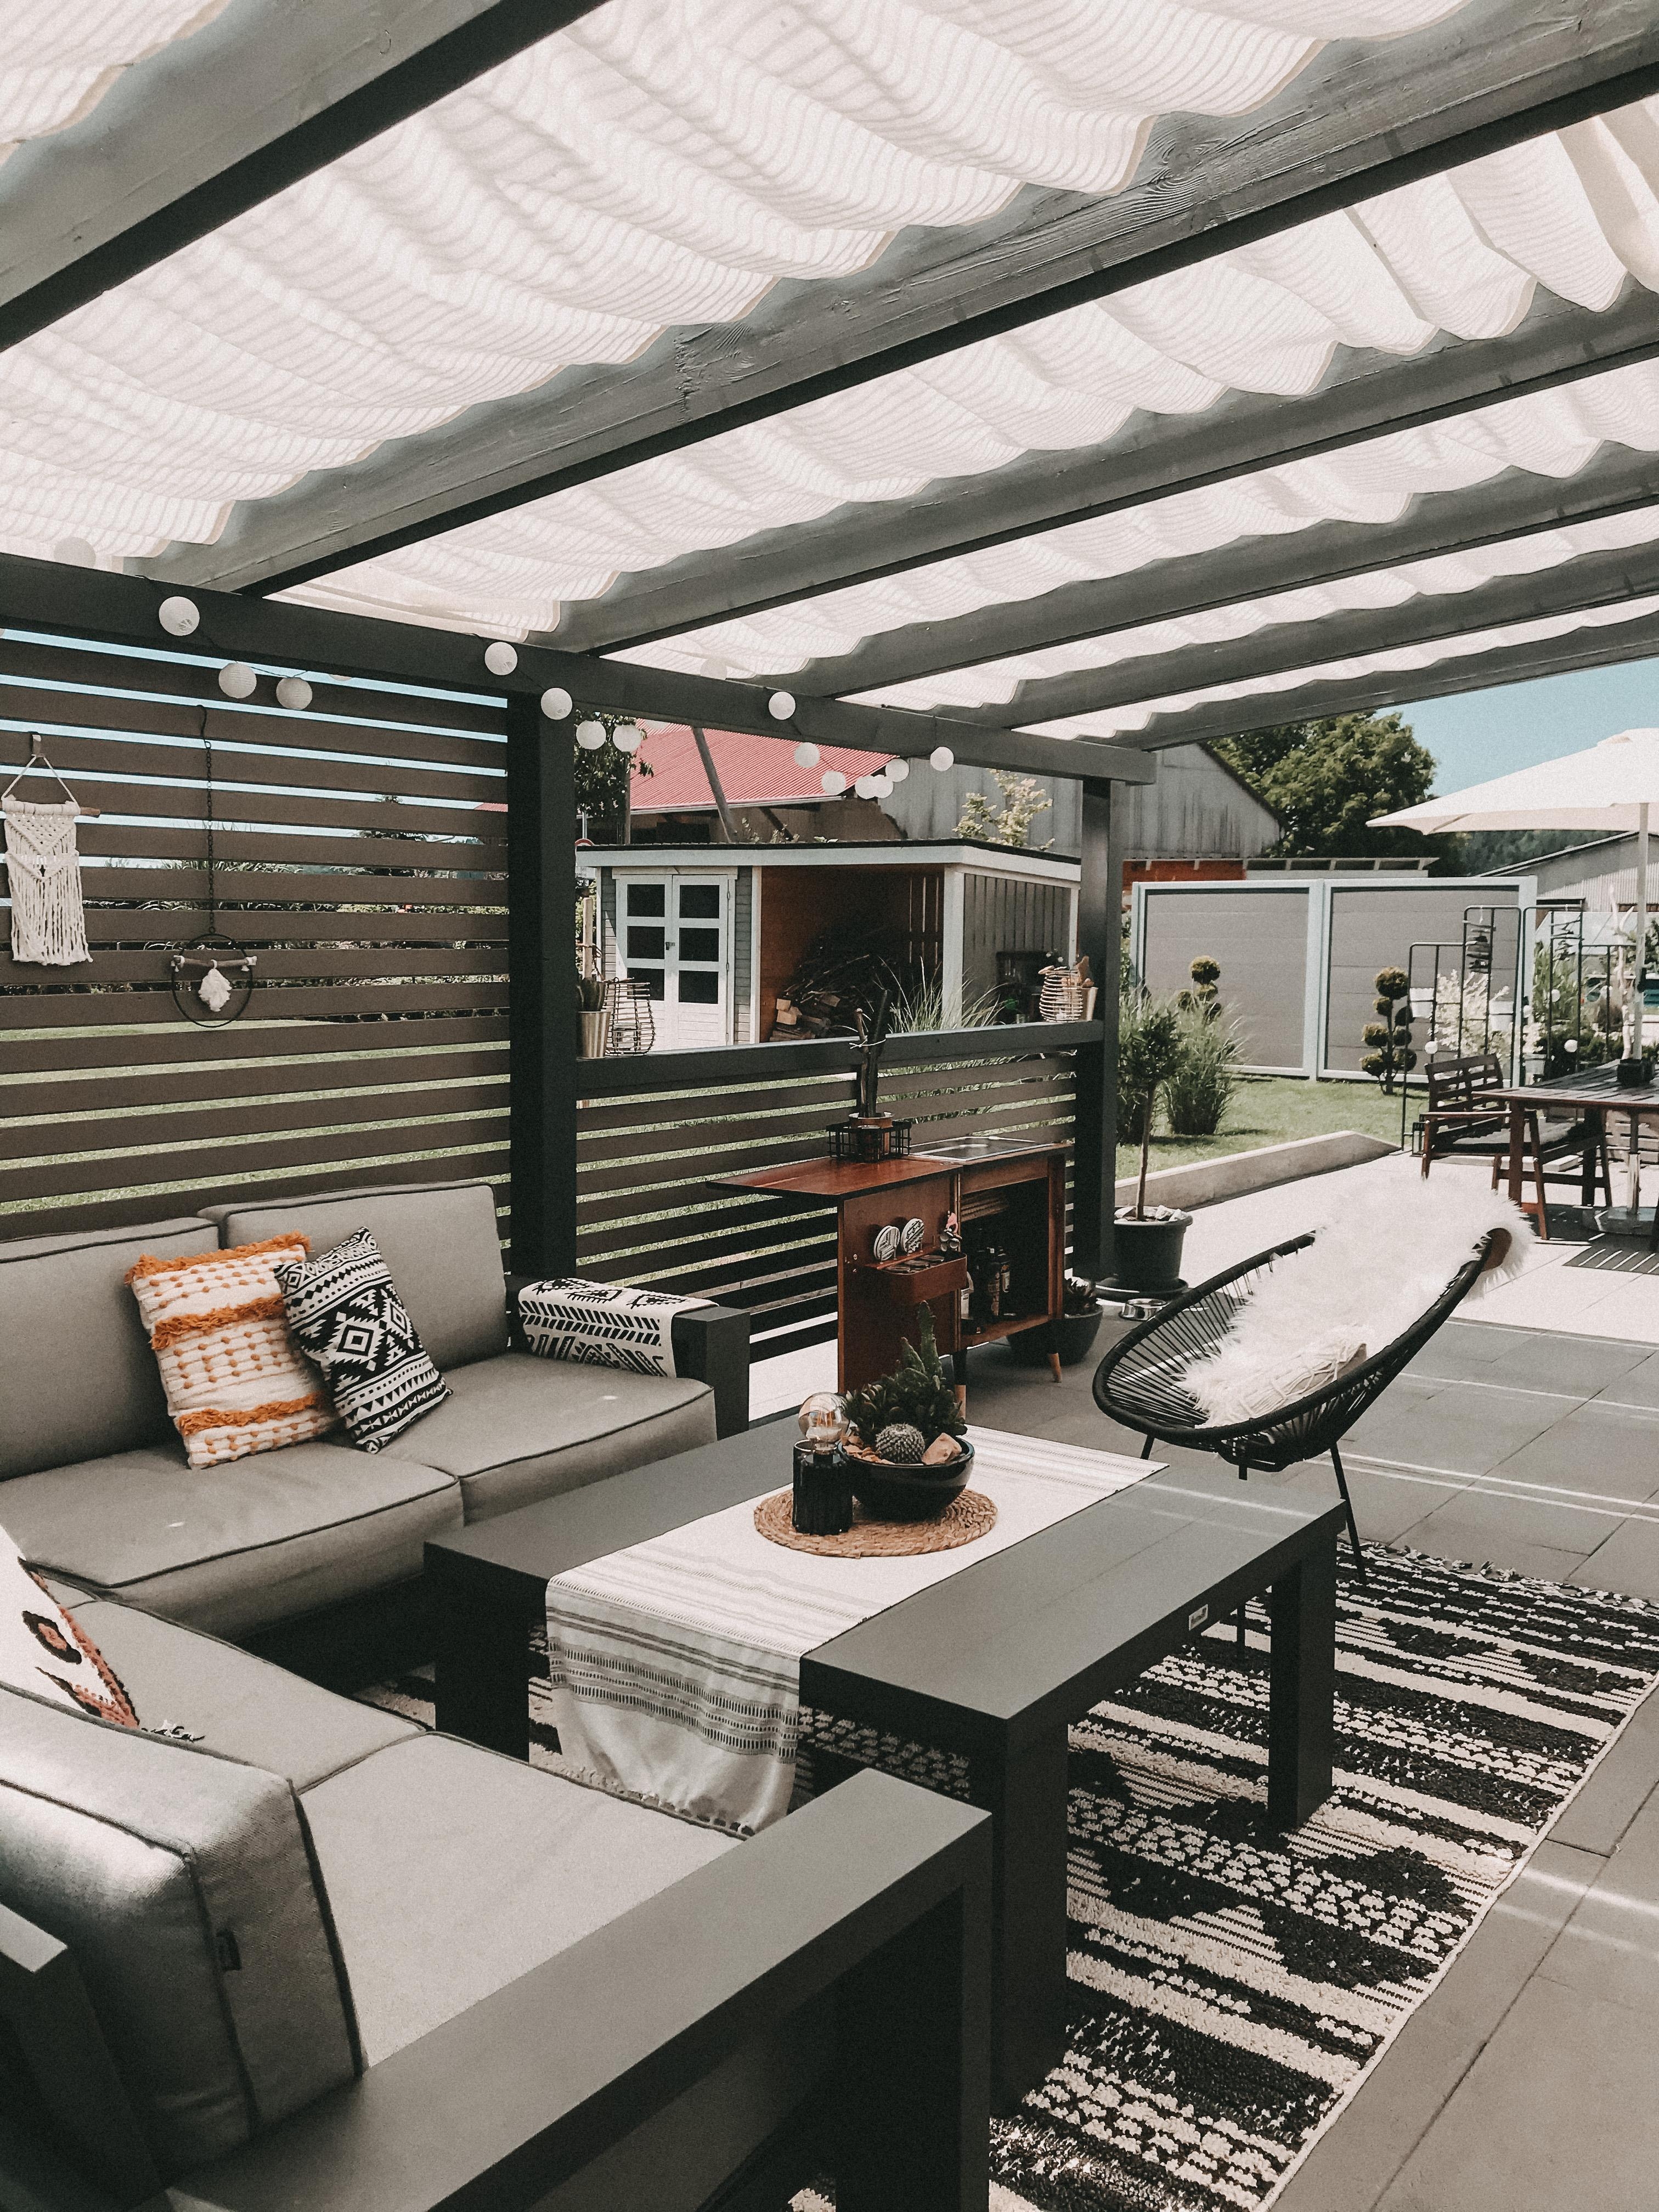 Unsere geliebte #terrasse hat endlich eine Überdachung! Wie findet ihr es? #bohostyle #outdoor #garten #lounge